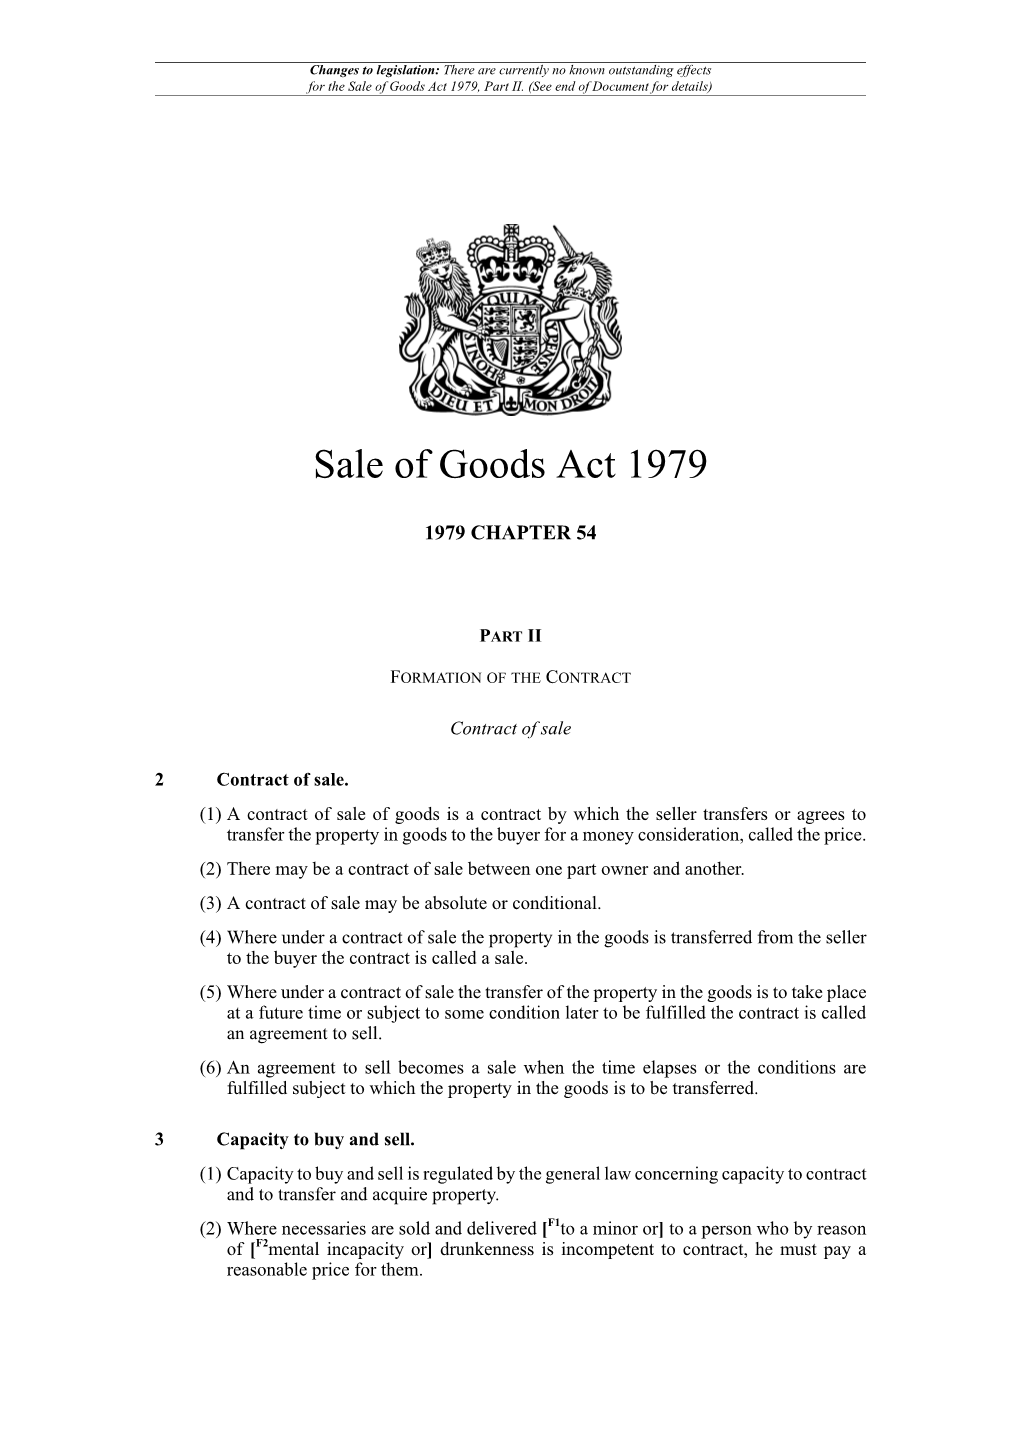 Sale of Goods Act 1979, Part II